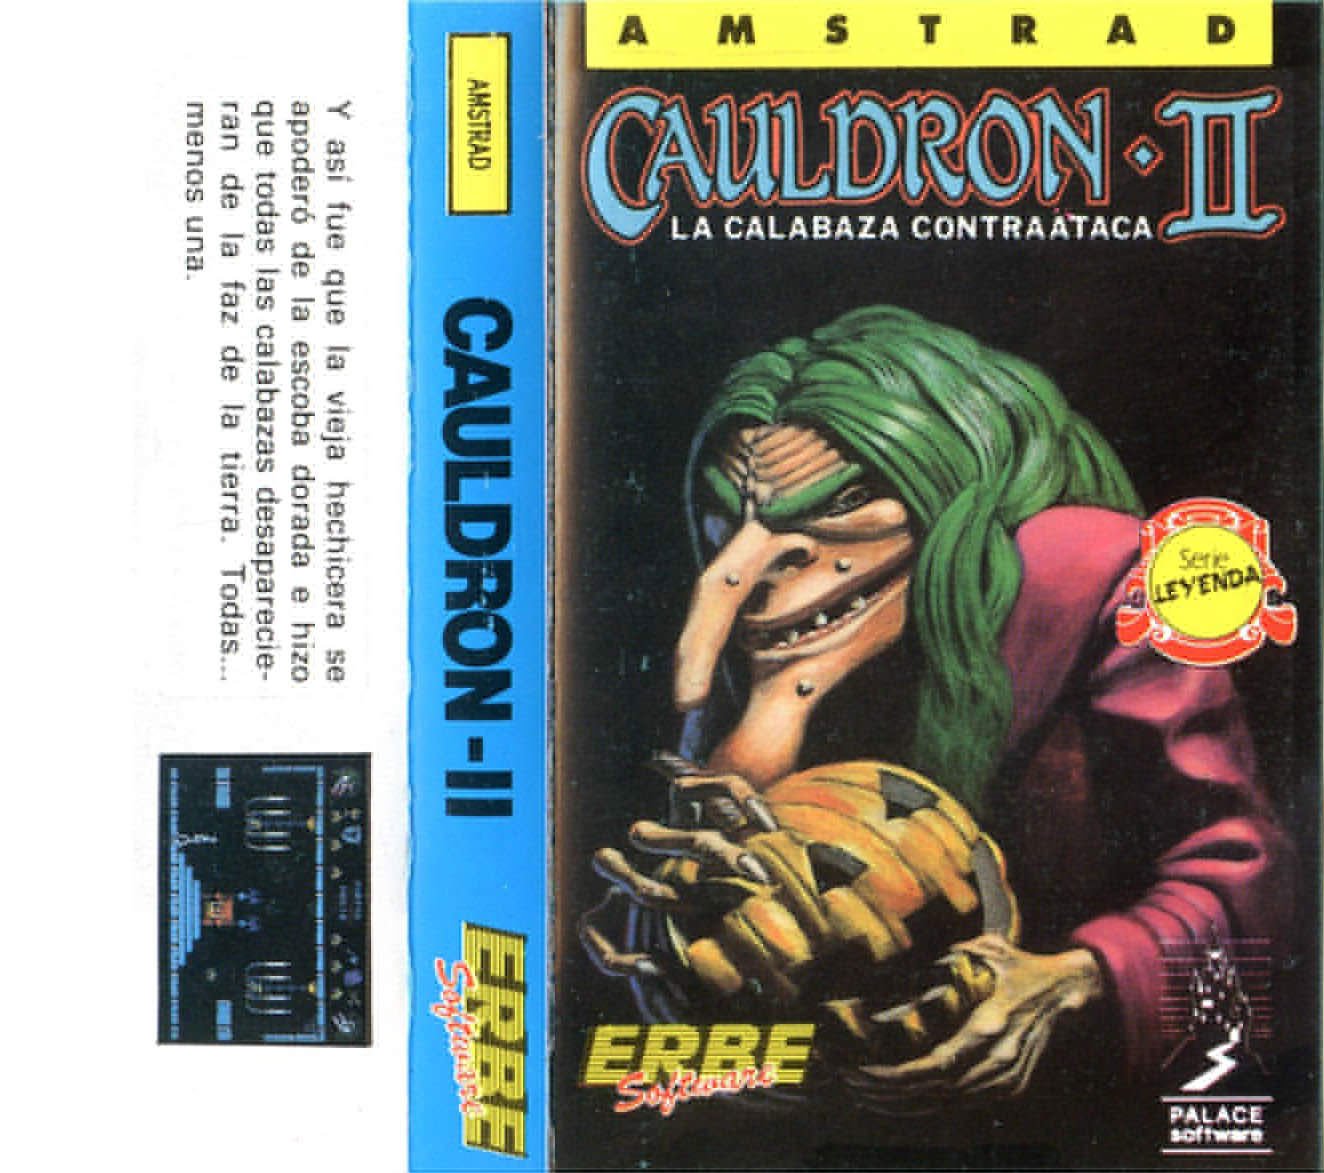 Caratula de Cauldron II para Amstrad CPC